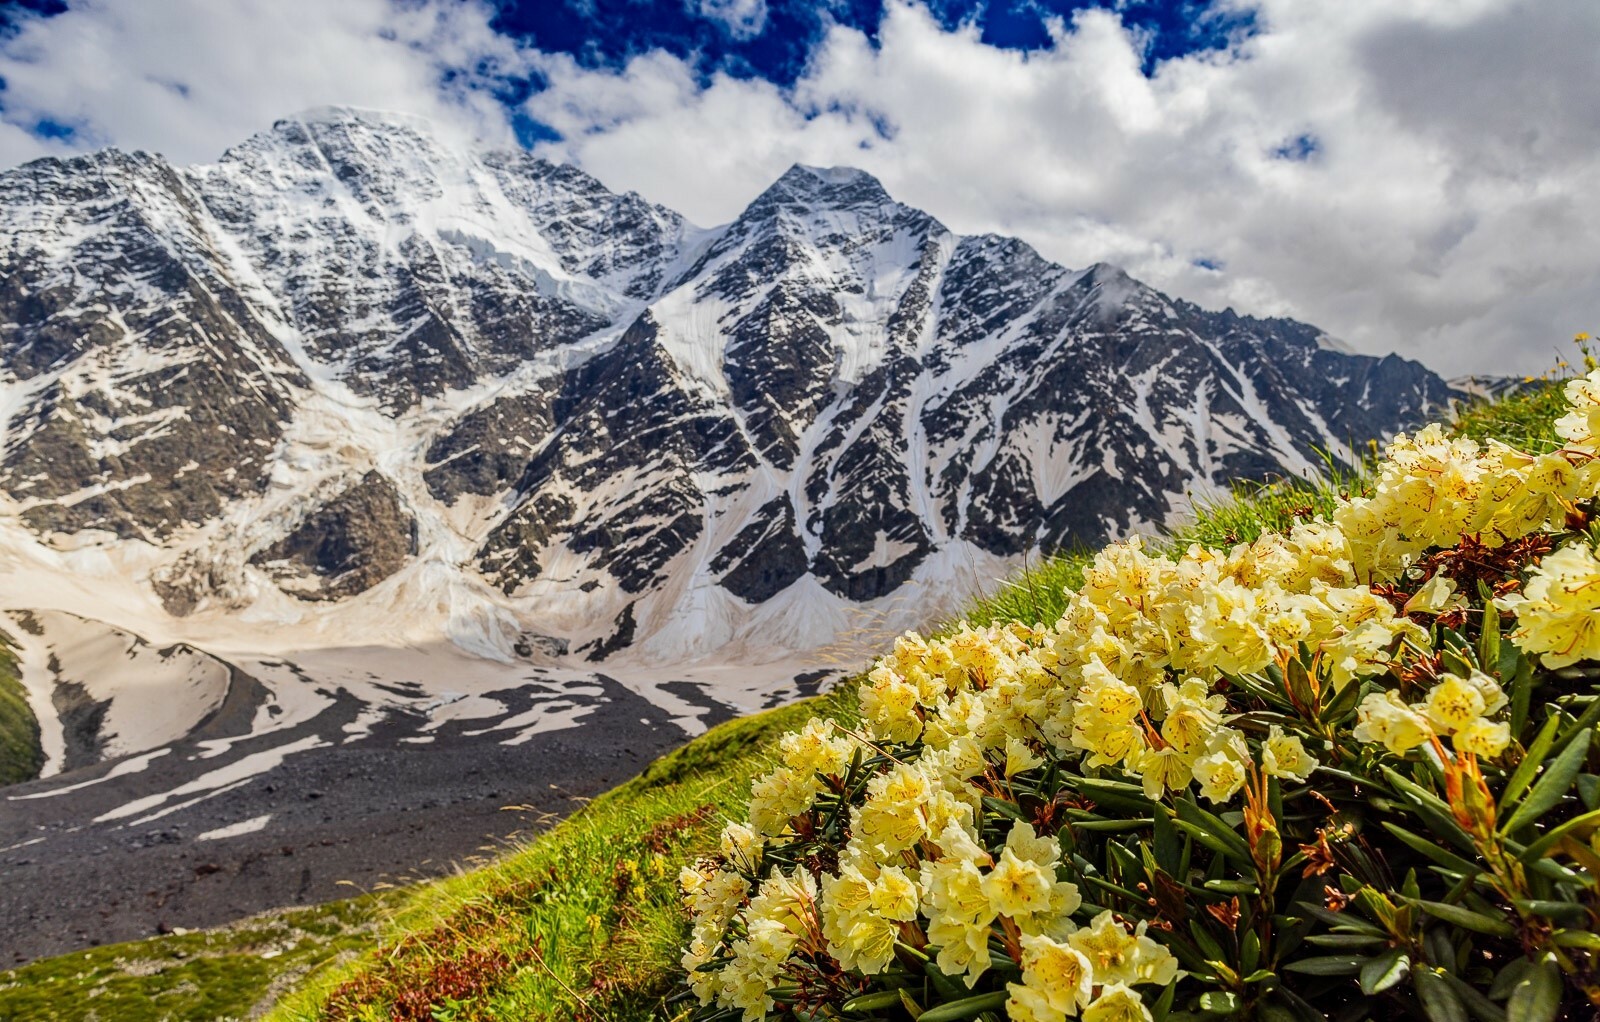 горы кавказа описание